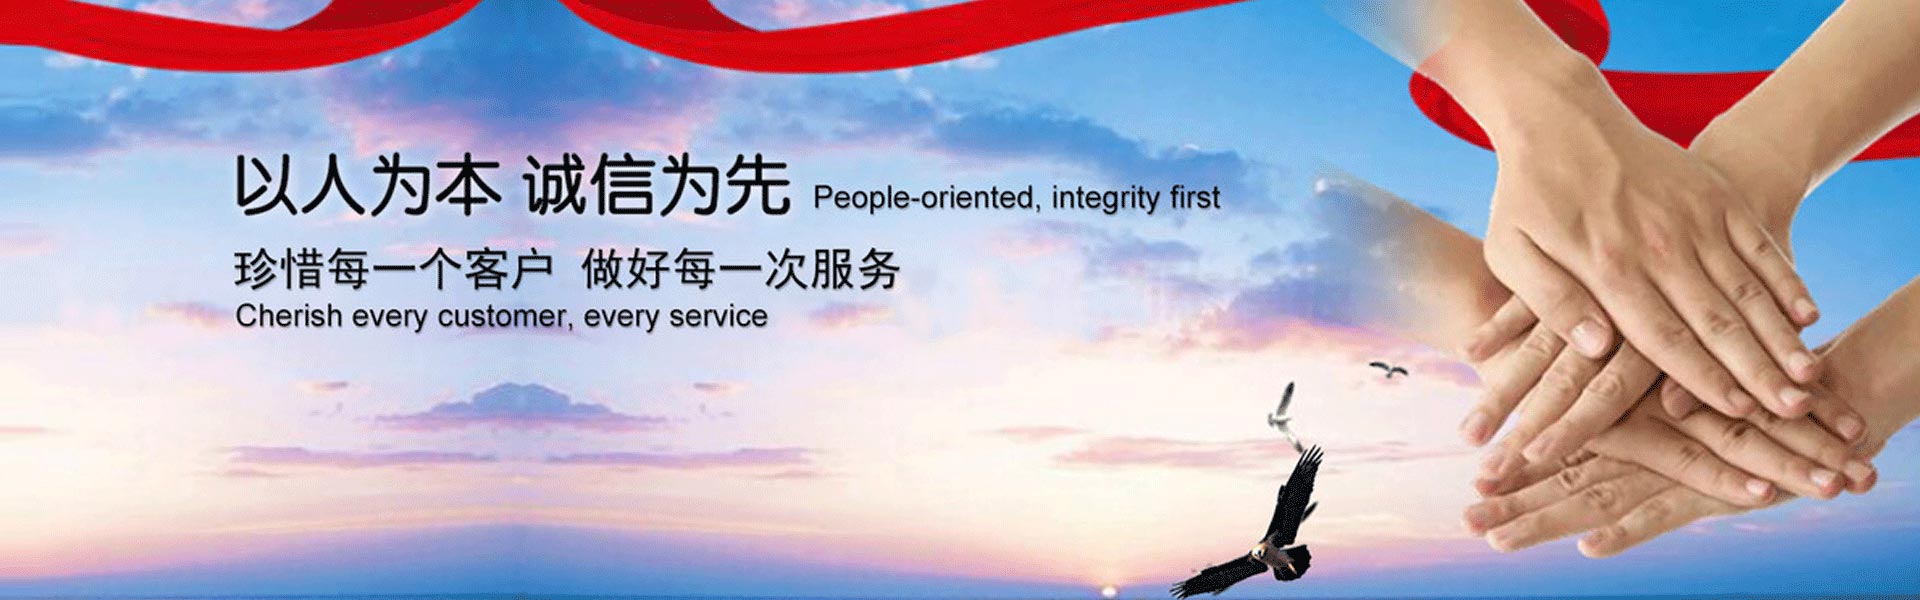 杭州商标注册服务机构是杭州地区最专业的商标注册平台,专注为个人和企业提供商标注册、商标申请、个体